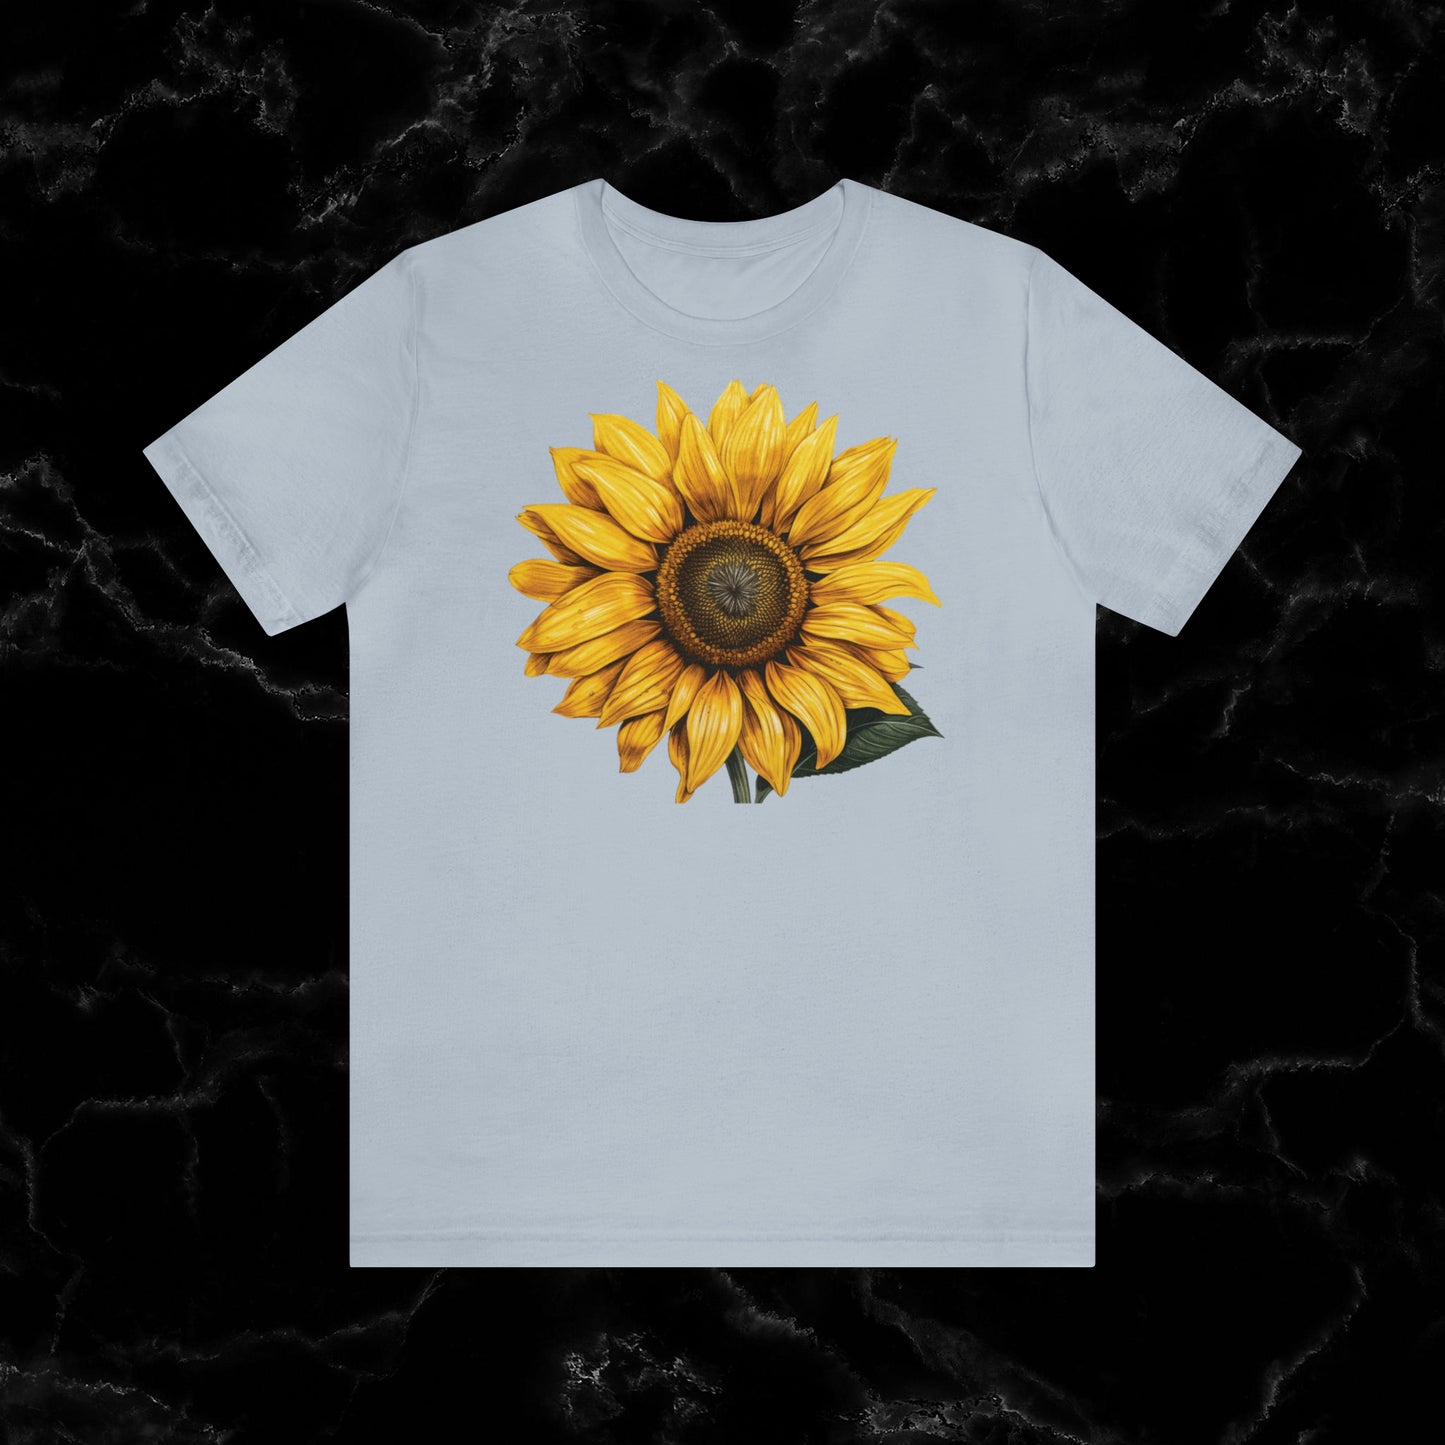 Sunflower Shirt Collection - Floral Tee, Garden Shirt, and Women's Fall Fashion Staples T-Shirt Light Blue S 